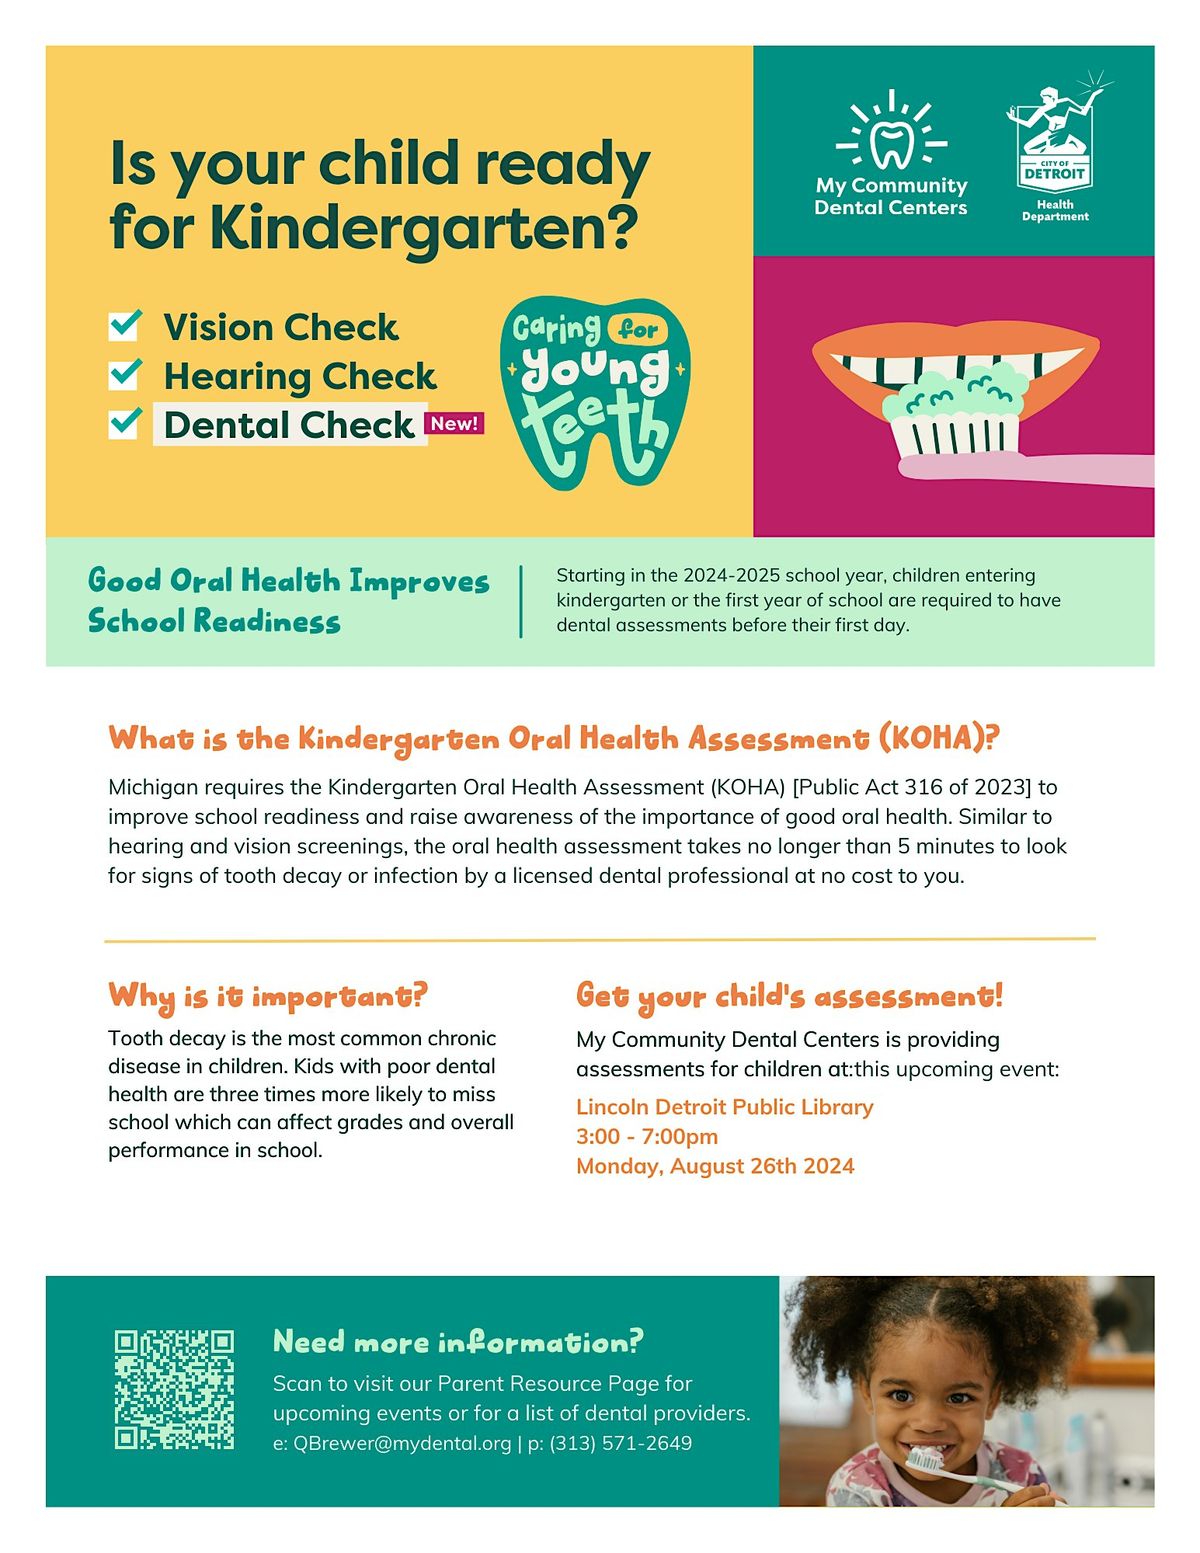 Kindgergarten Oral Health Assessment